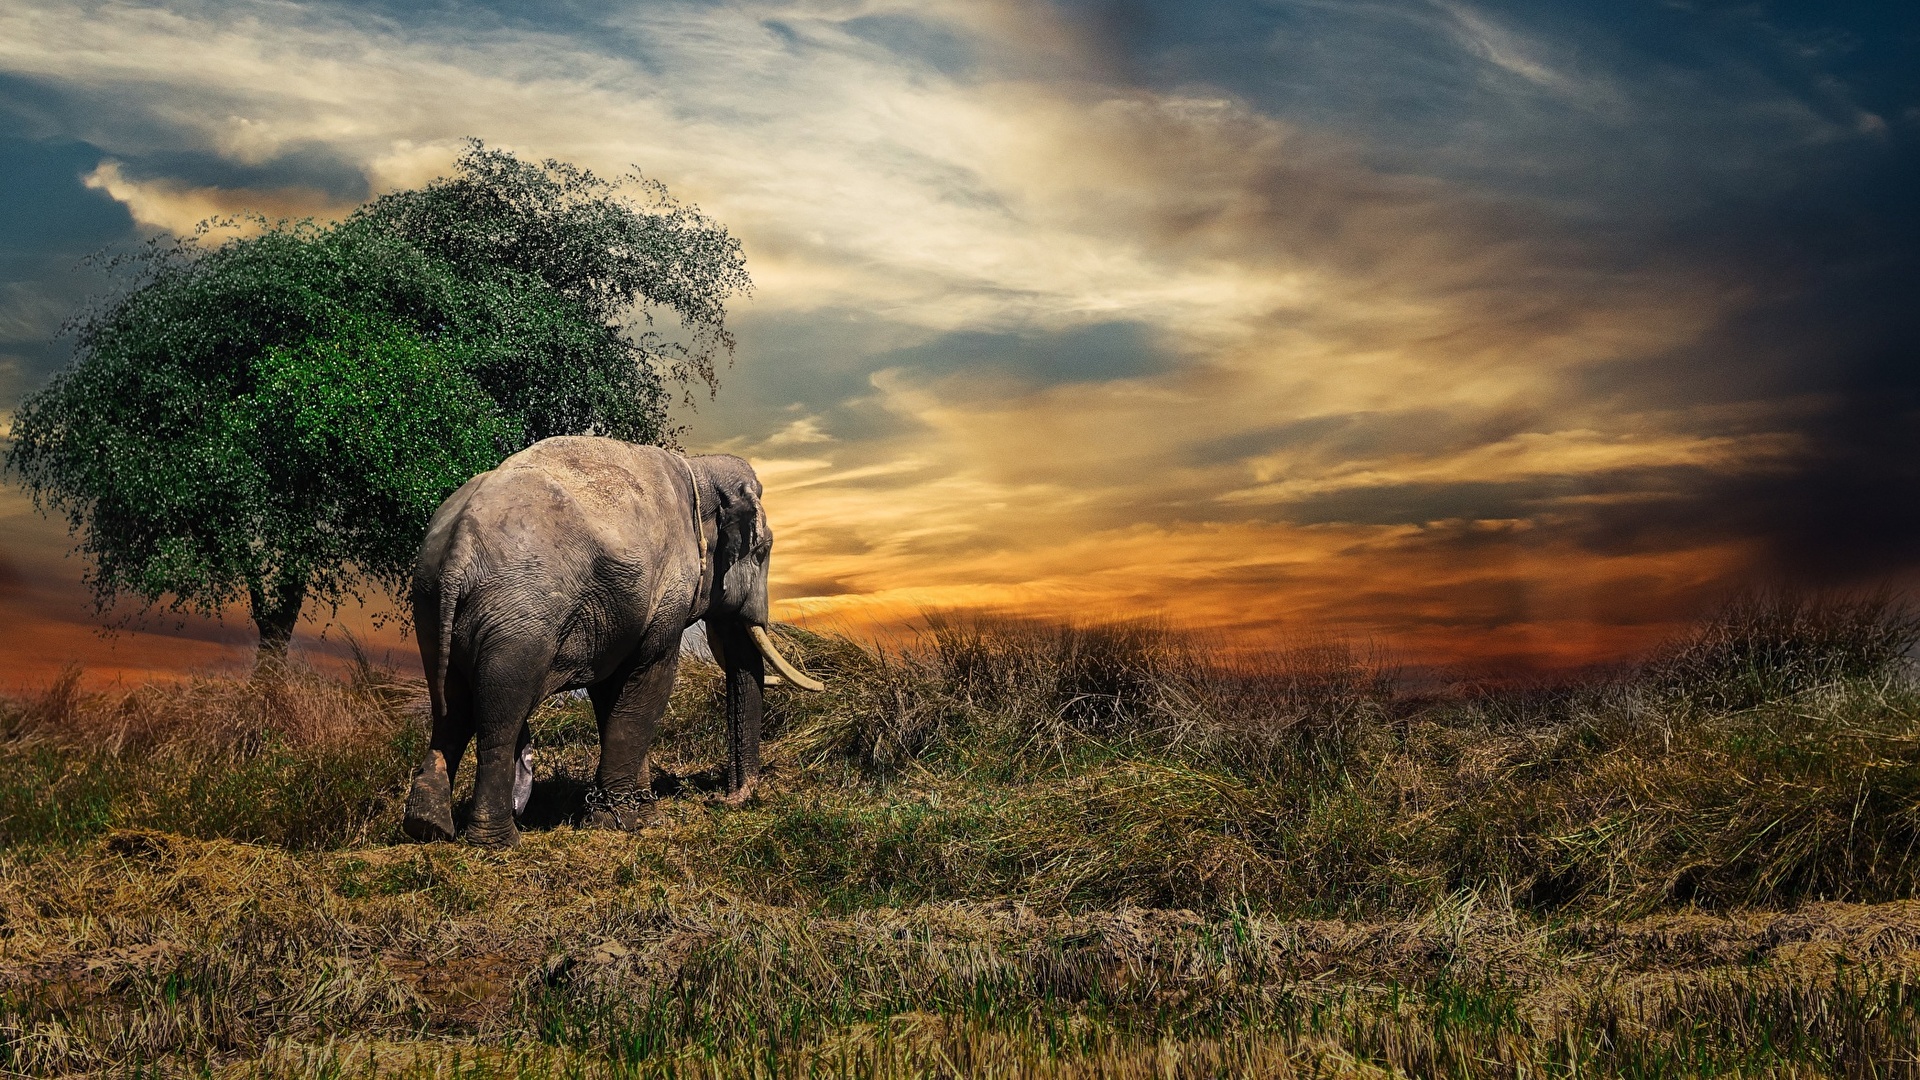 elephants | Elephant wallpaper, Elephant, Minimalist desktop wallpaper